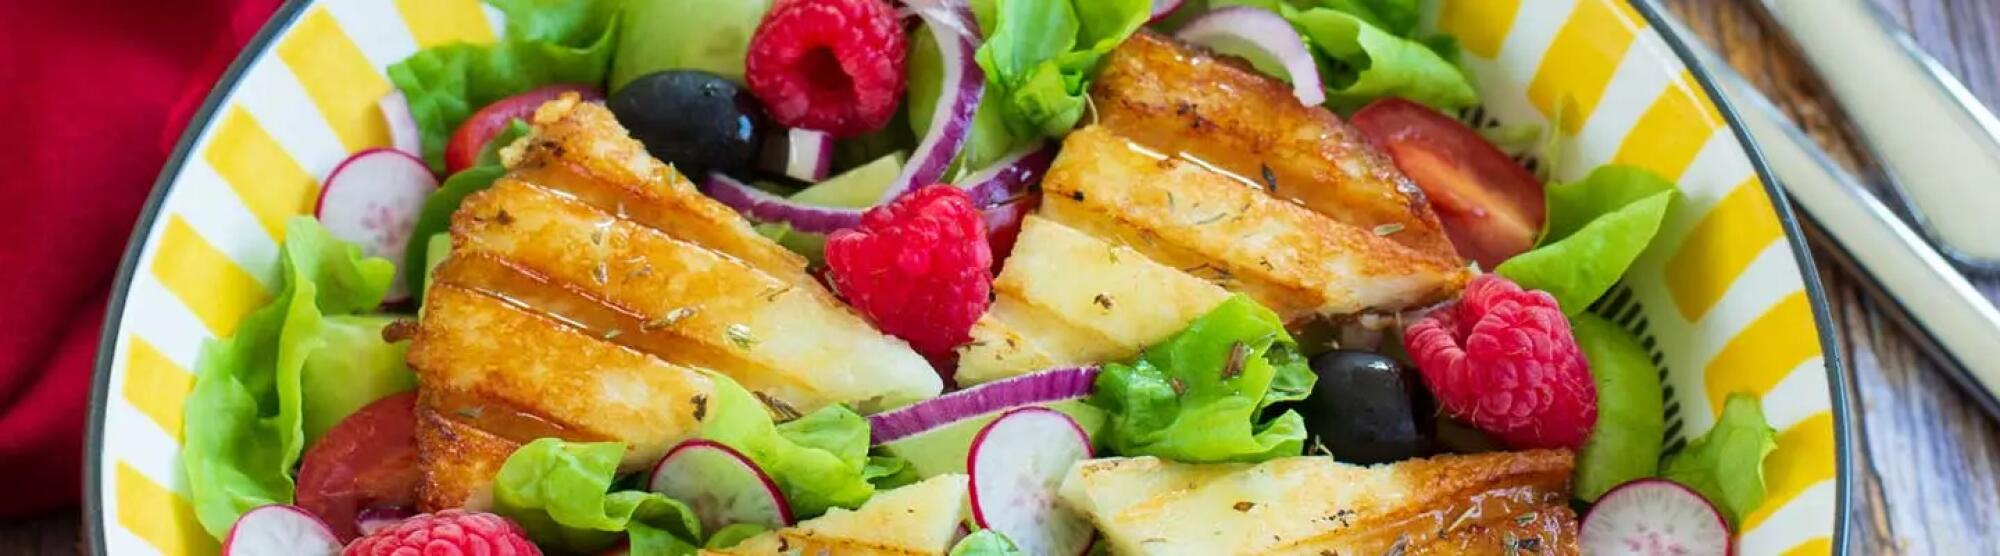 Salade grecque au fromage à griller